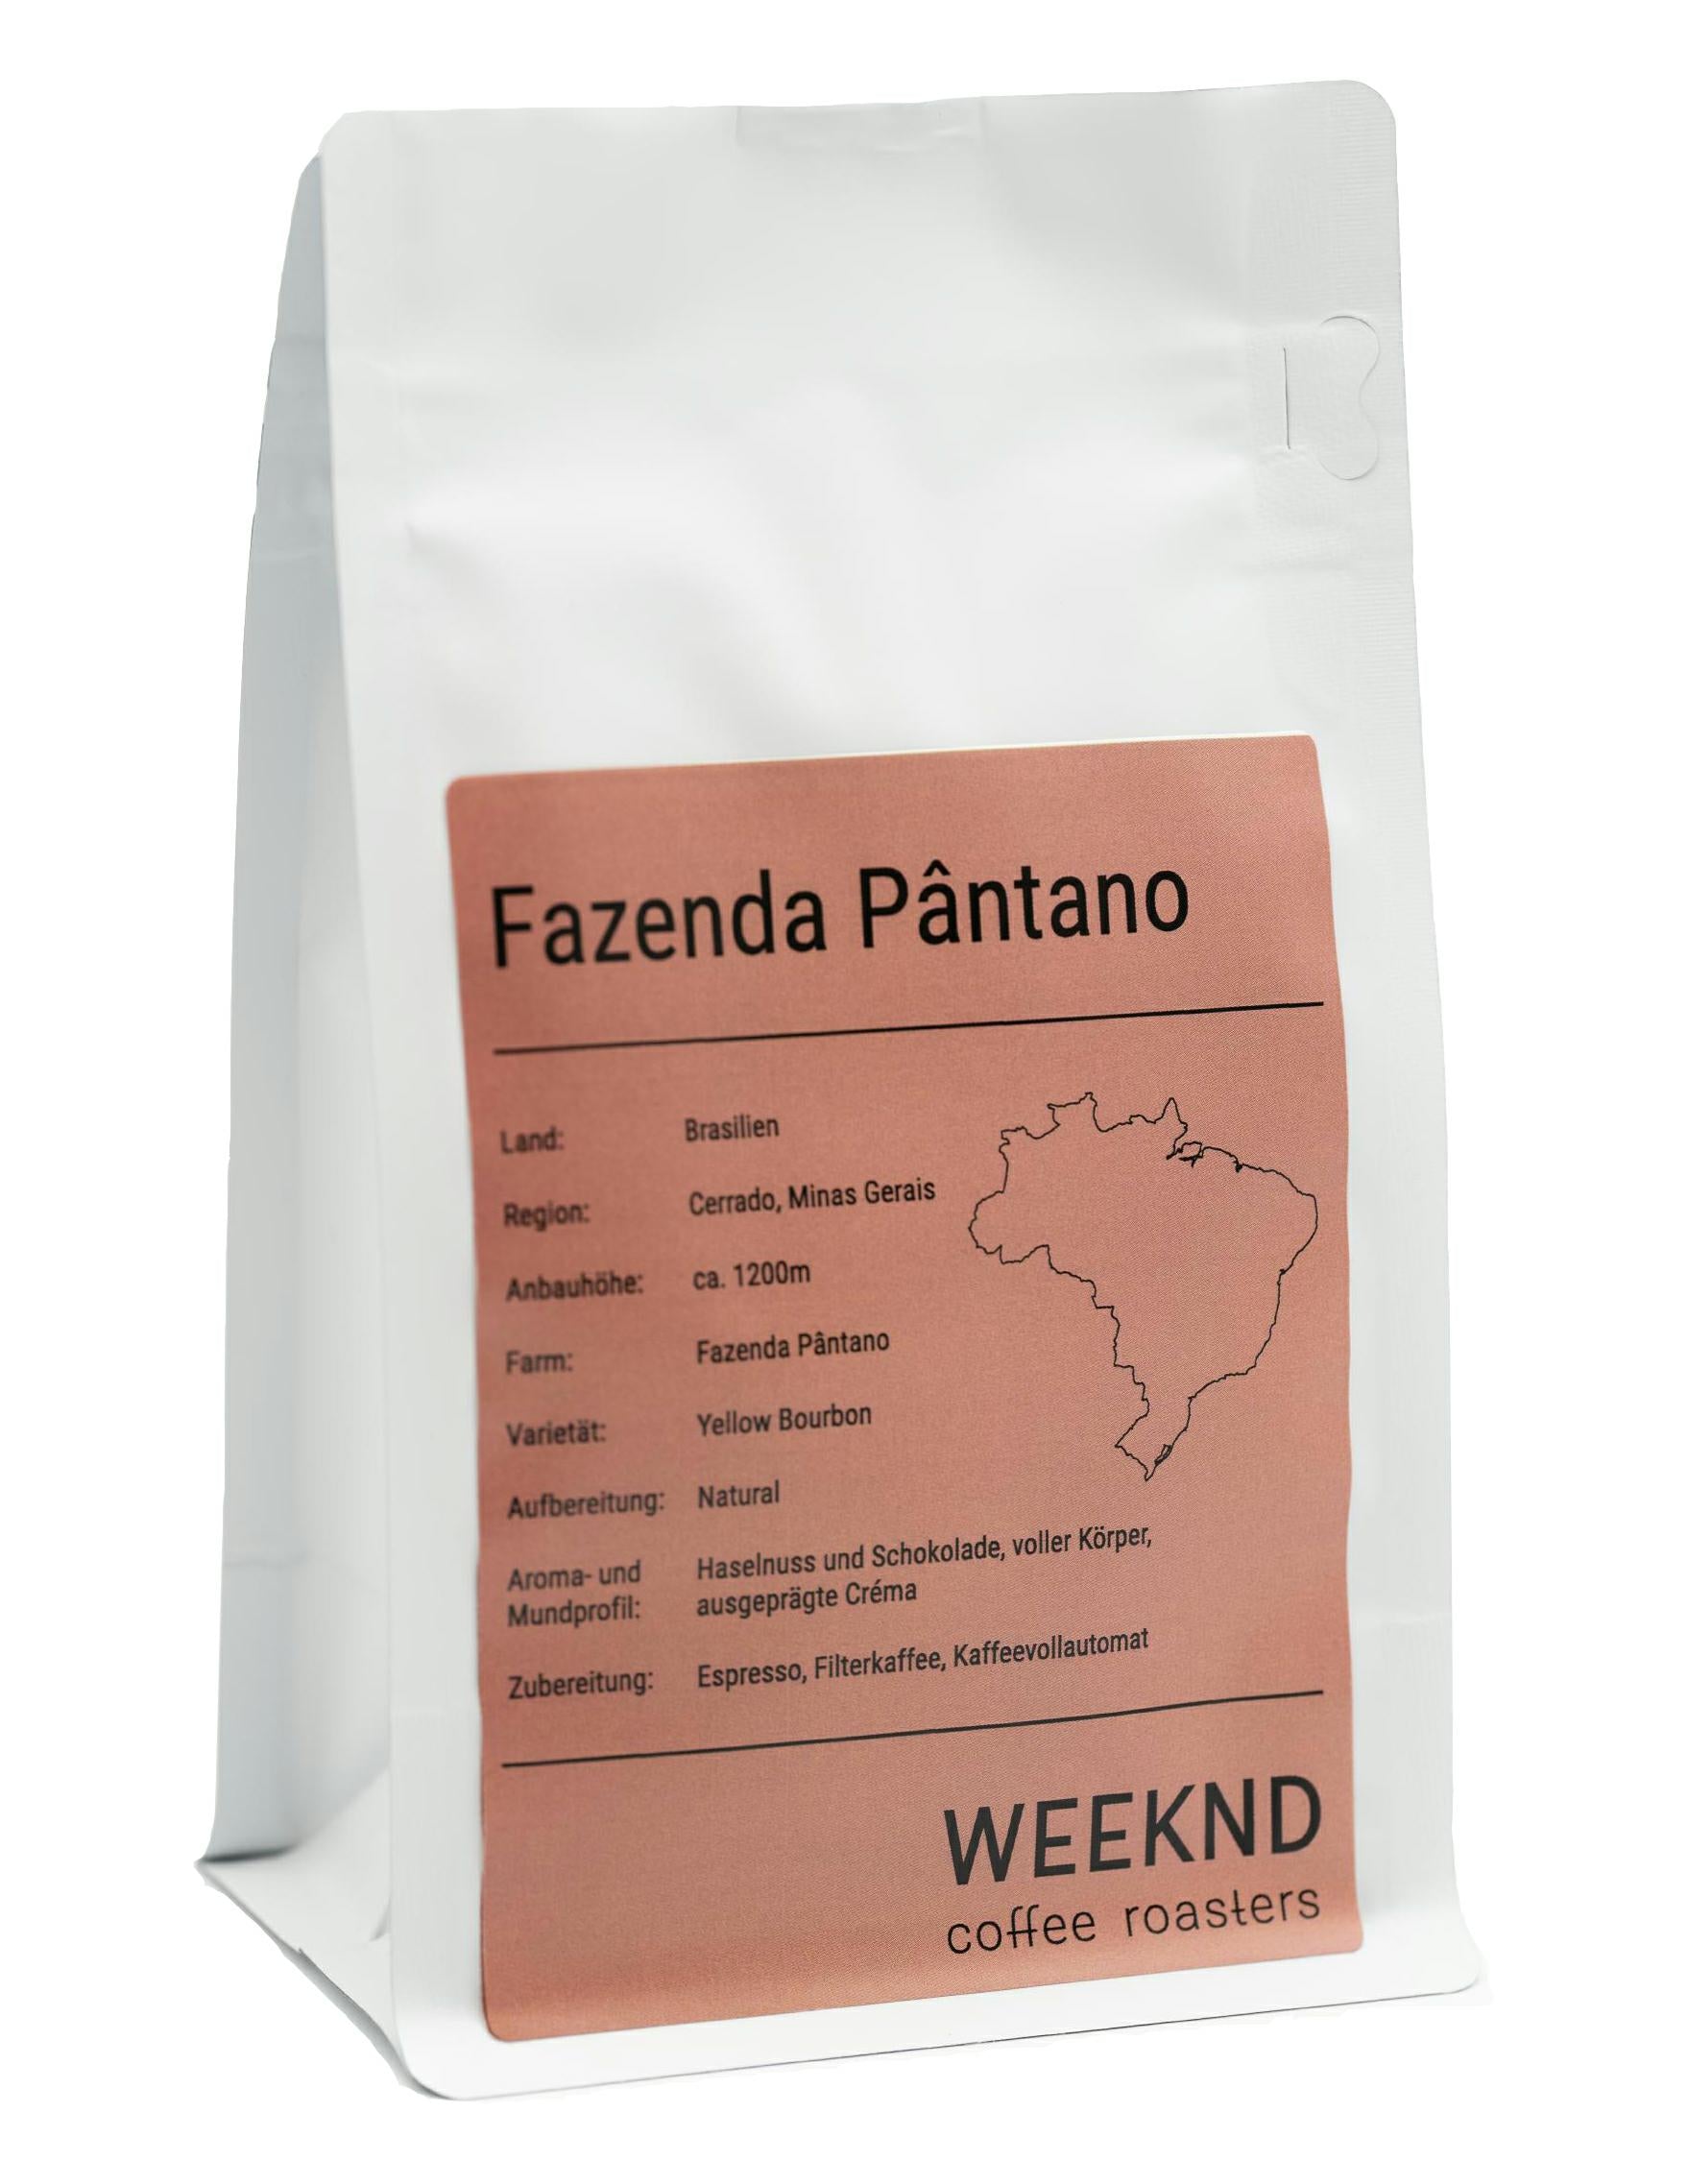 Fazenda Pântano, eine malerische Kaffeefarm, bekannt für ihre erlesenen Kaffeesorten und nachhaltigen Anbaumethoden - entdecke die Geschmacksvielfalt in unserer Kaffeerösterei